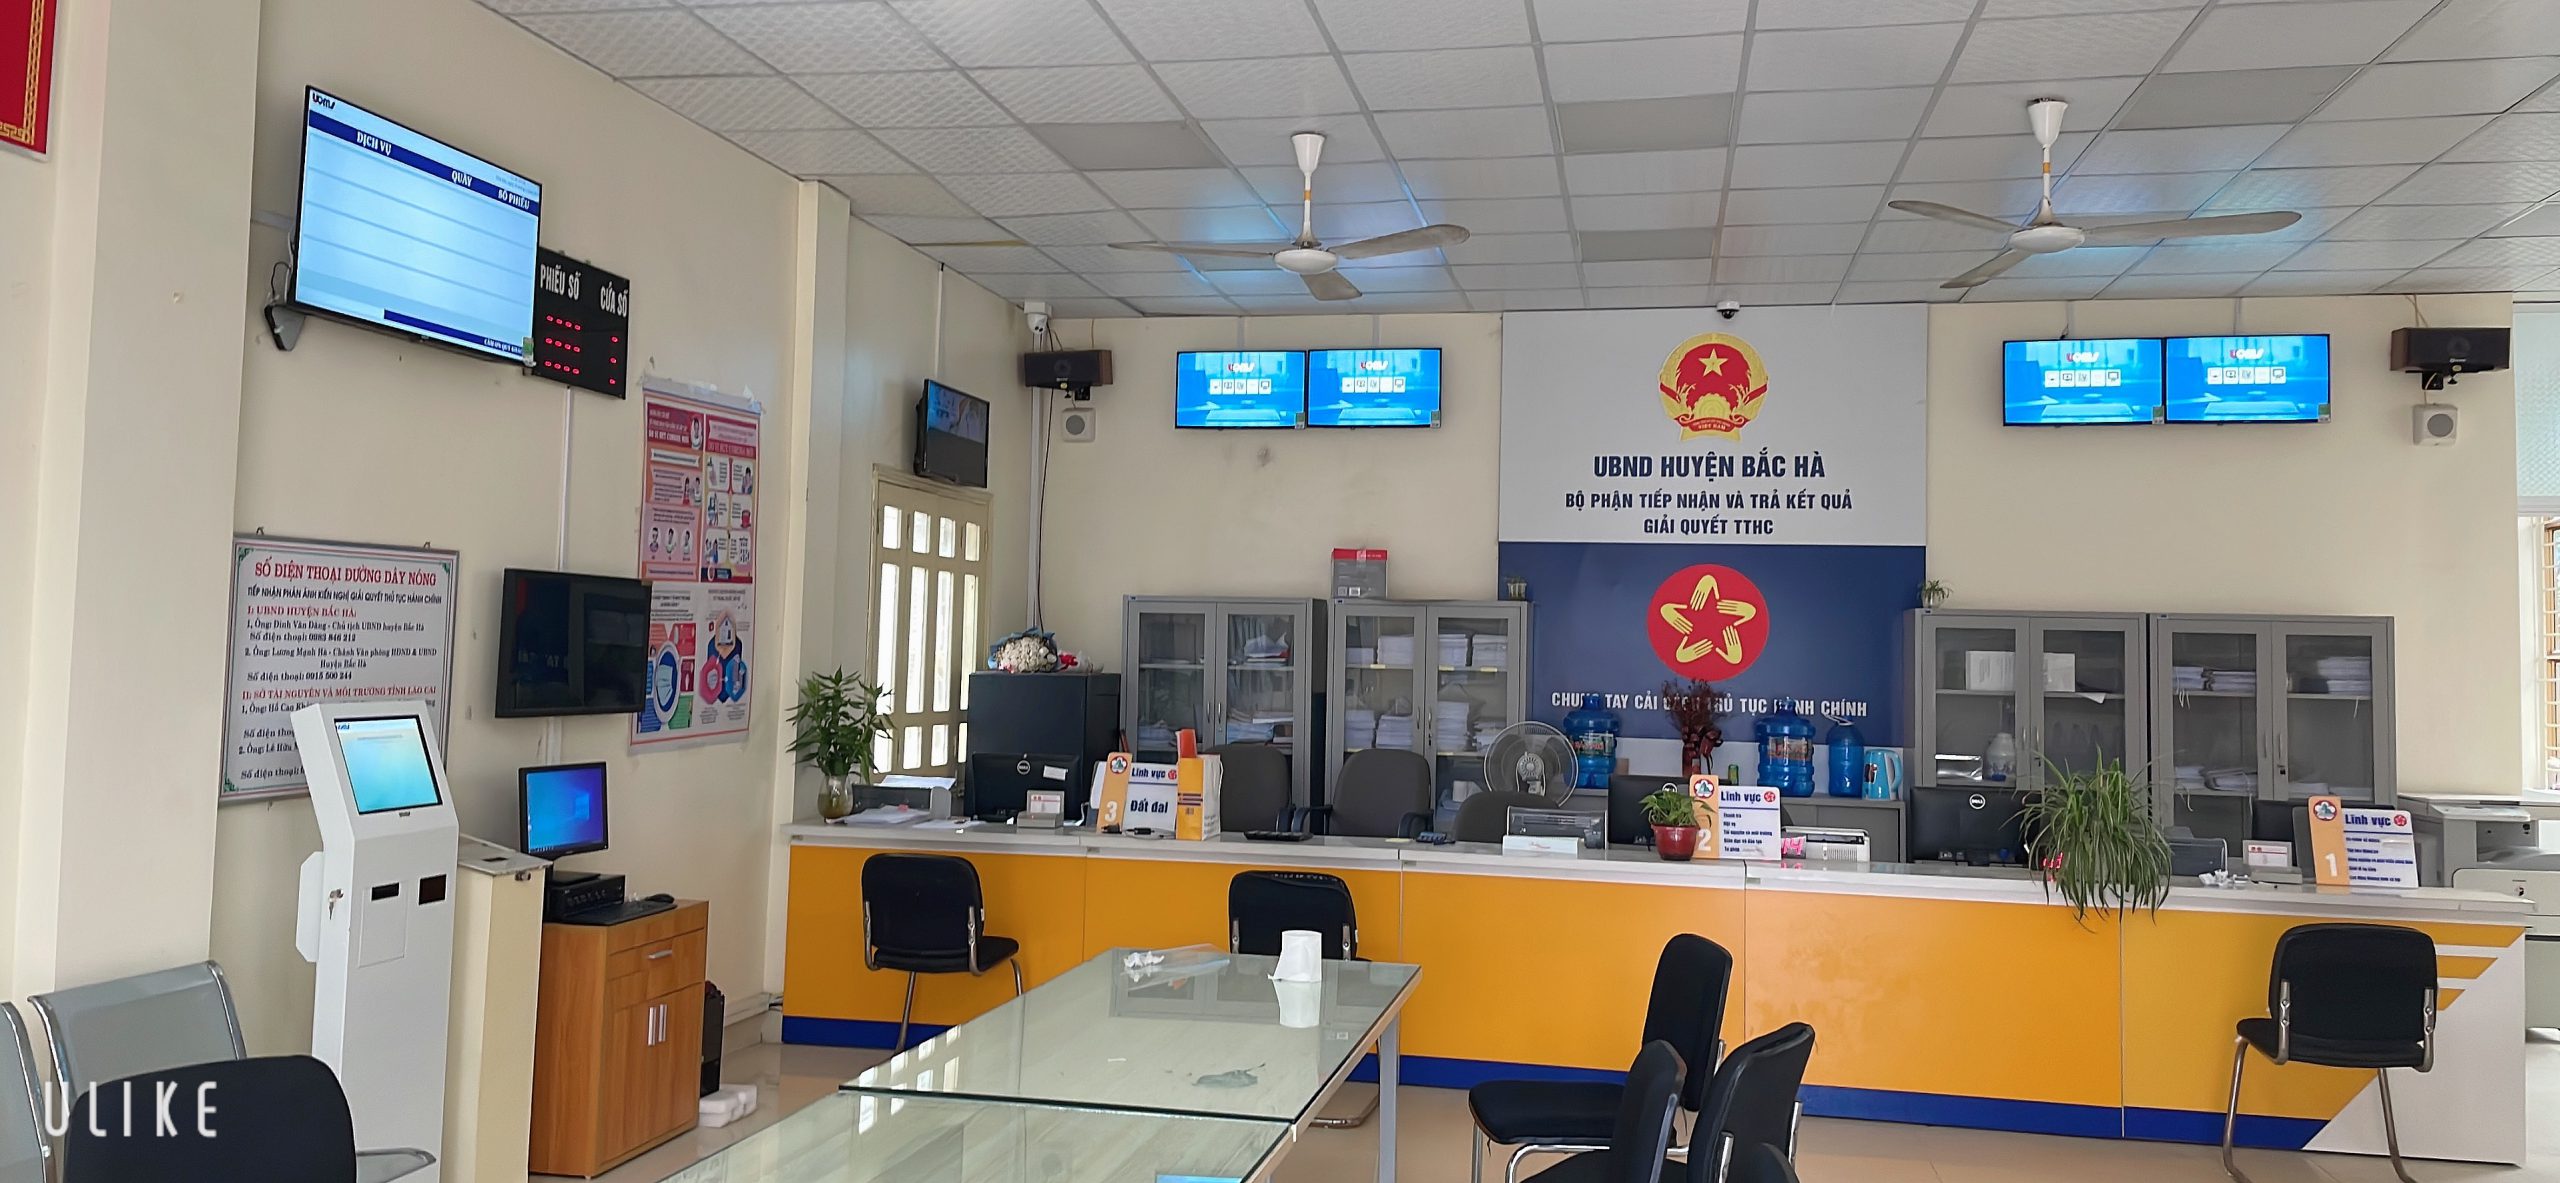 Hệ thống lấy số tự động uQMS huyện Bắc Hà, Lào Cai